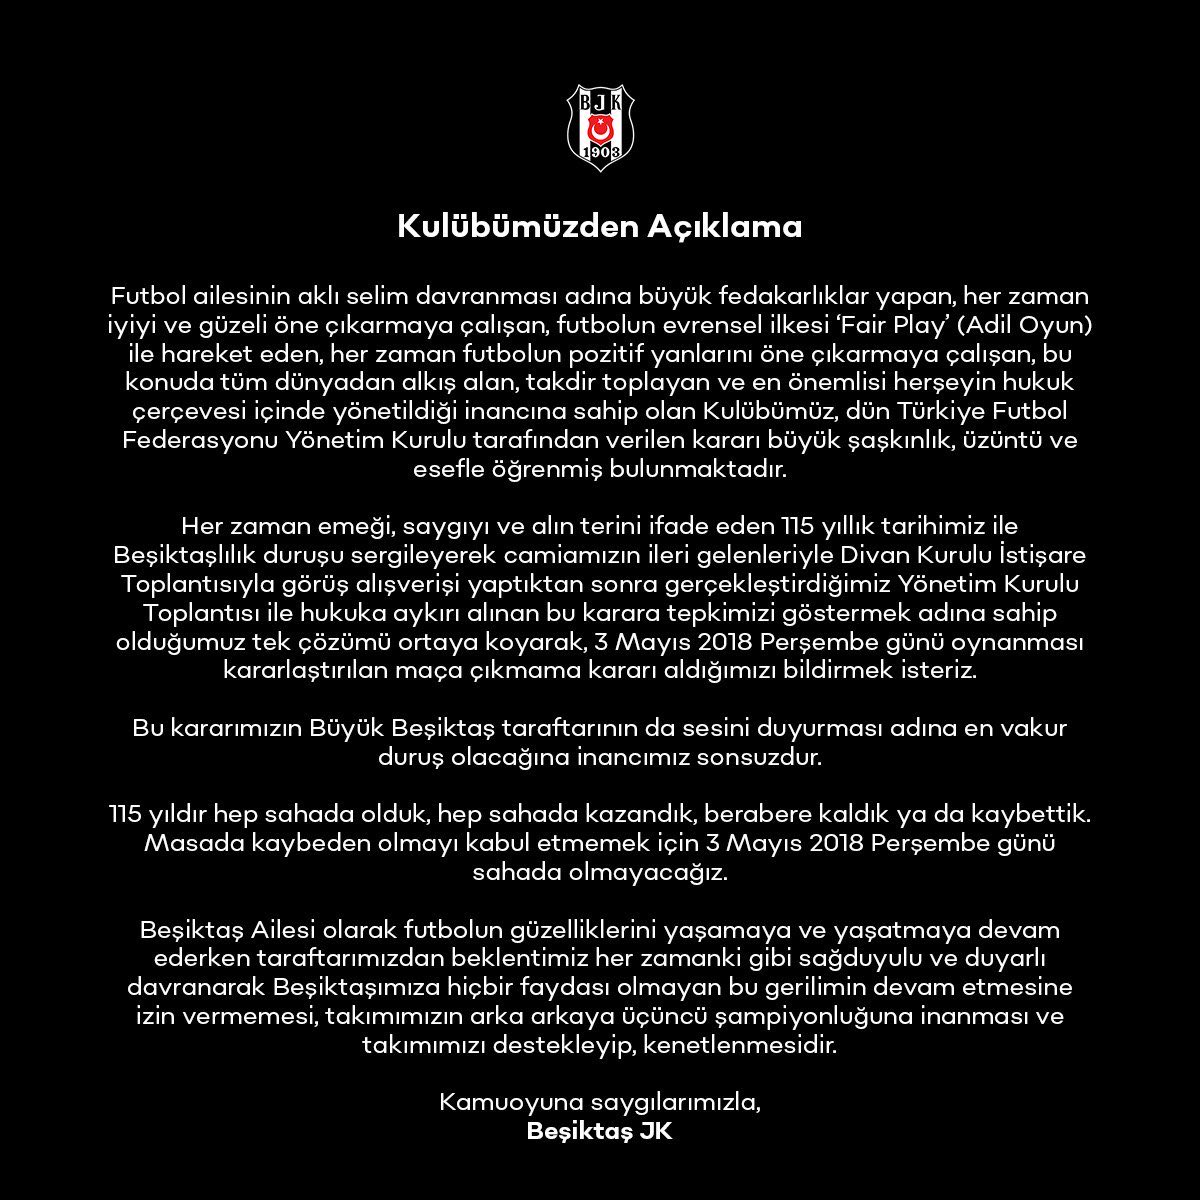 Böyle buyurdu BJK 'Bu kararımızın Büyük Beşiktaş taraftarının da sesini duyurması adına en vakur duruş olacağına inancımız sonsuzdur. 115 yıldır hep sahada olduk, hep sahada kazandık, berabere kaldık ya da kaybettik. Masada kaybeden olmayı kabul etmemek için 3 Mayıs 2018…